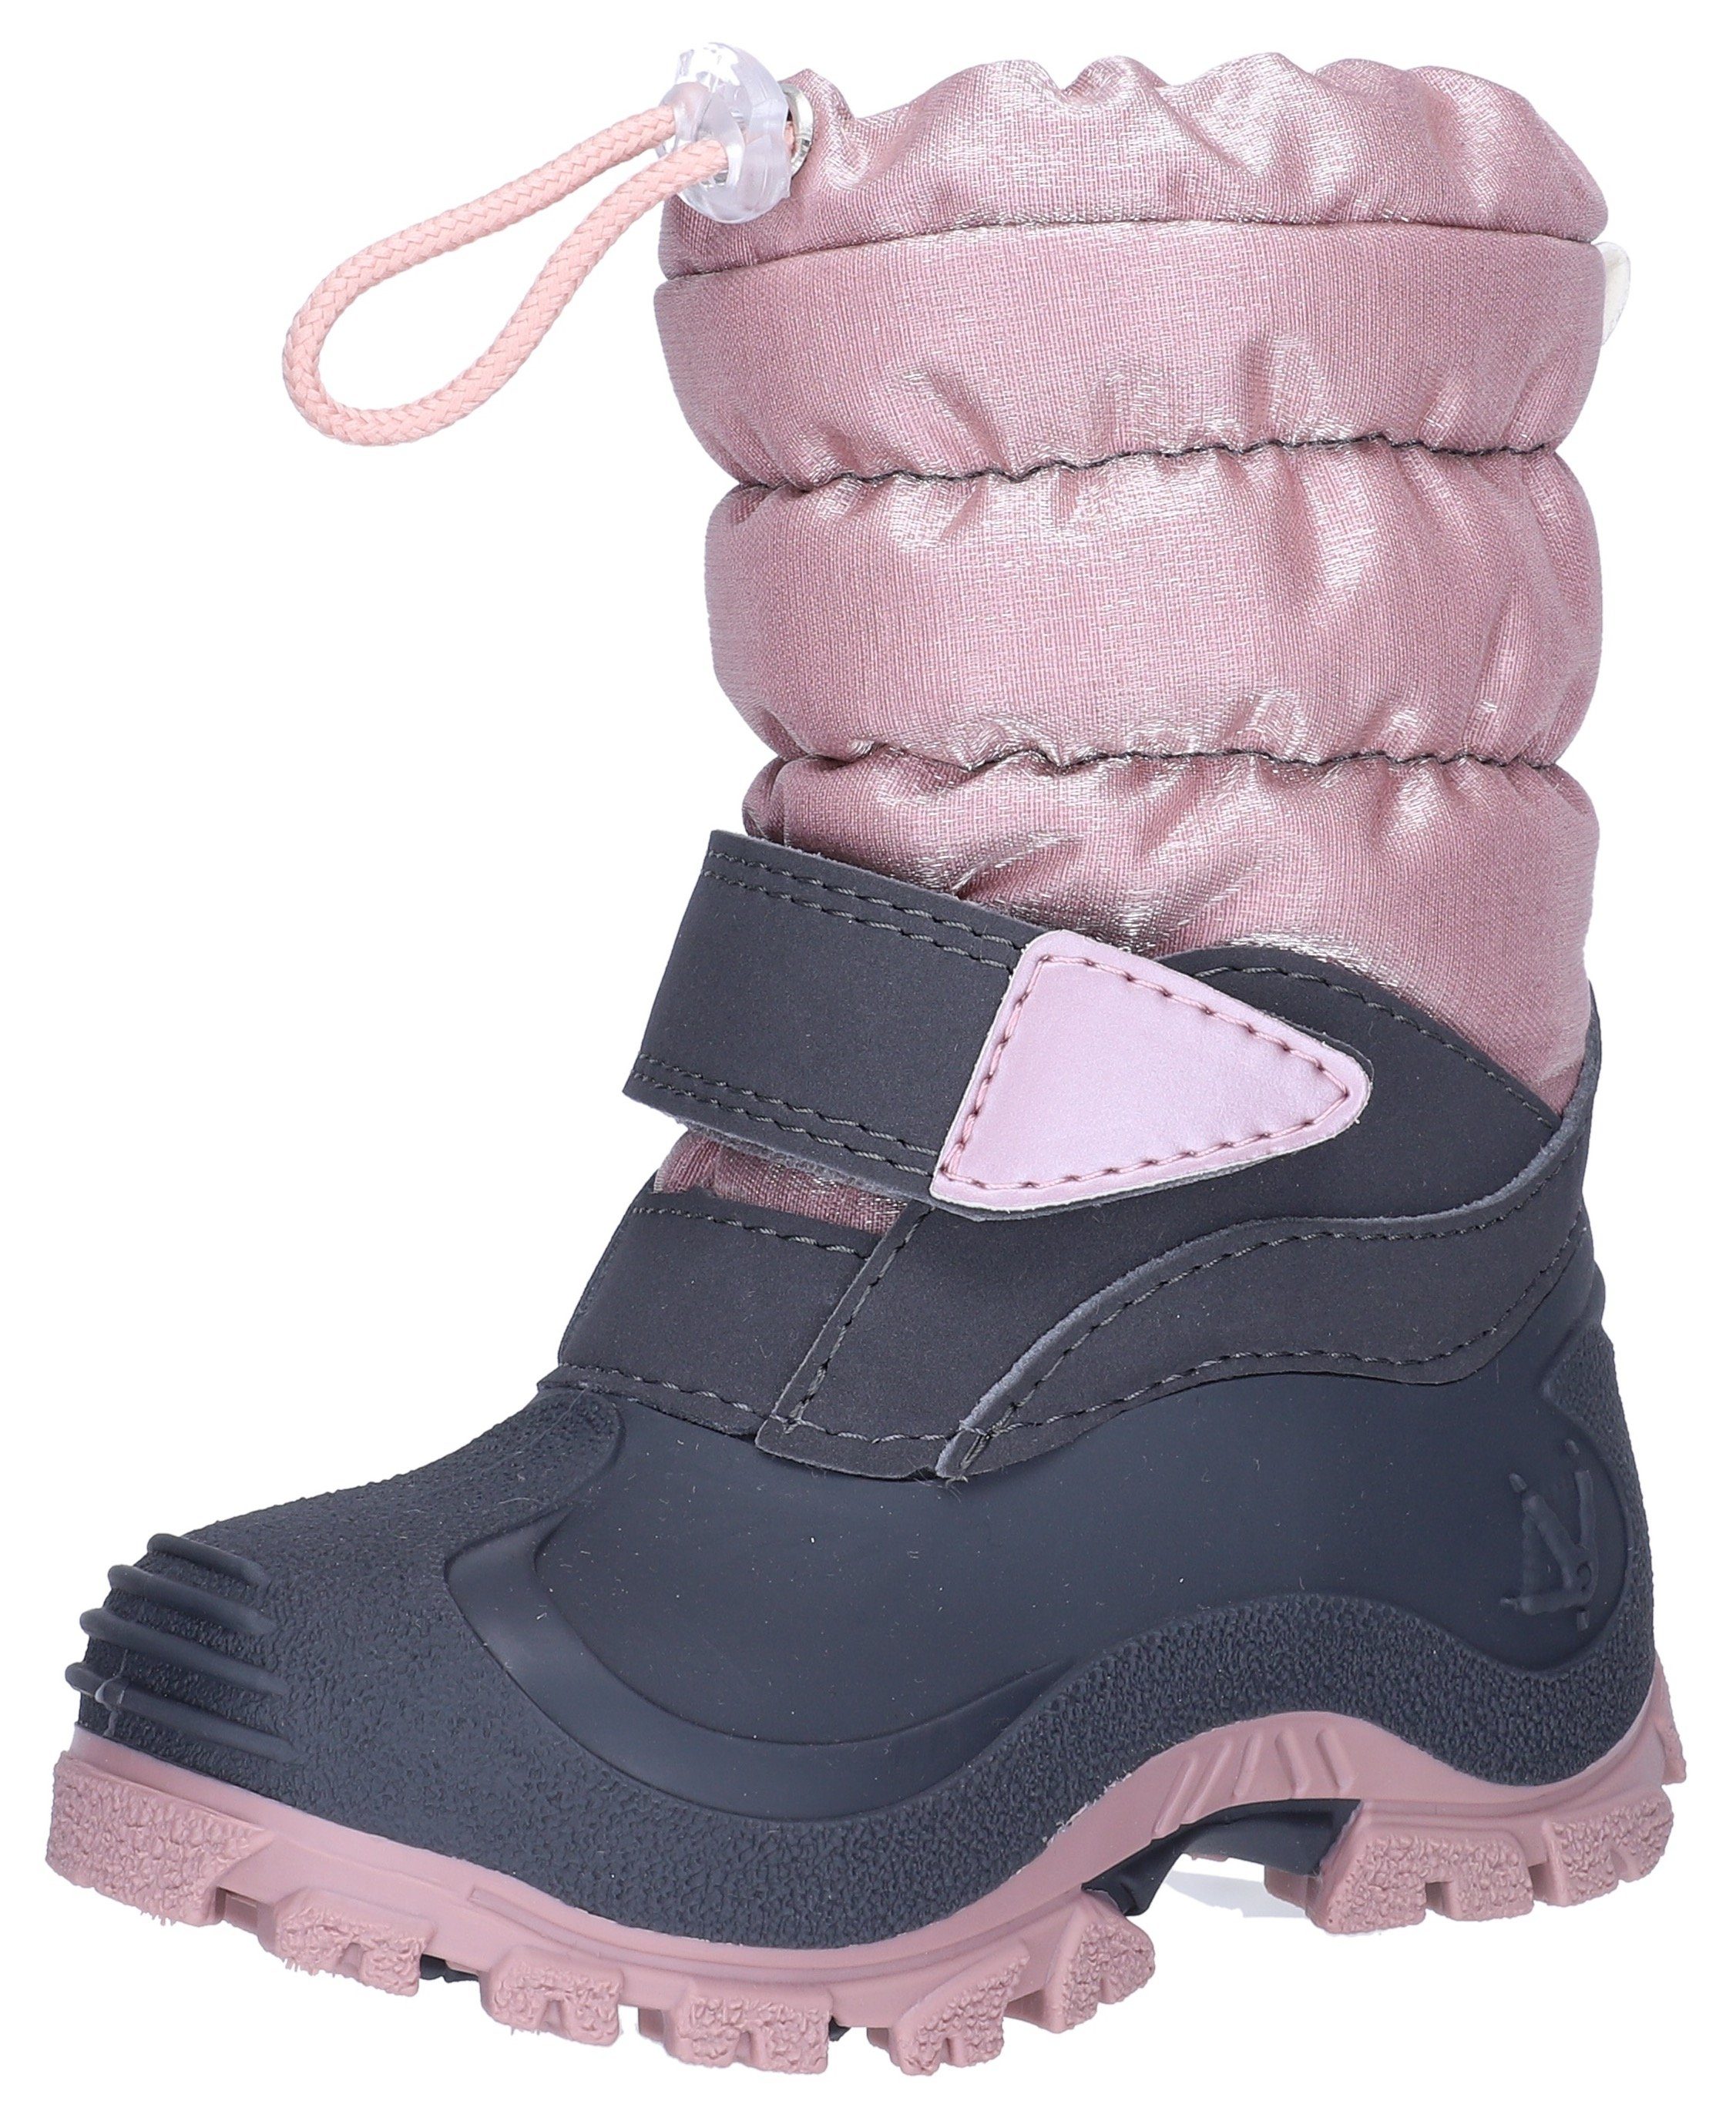 Lurchi Winterstiefel Fjonna Snowboots mit Warmfutter grau-rosa